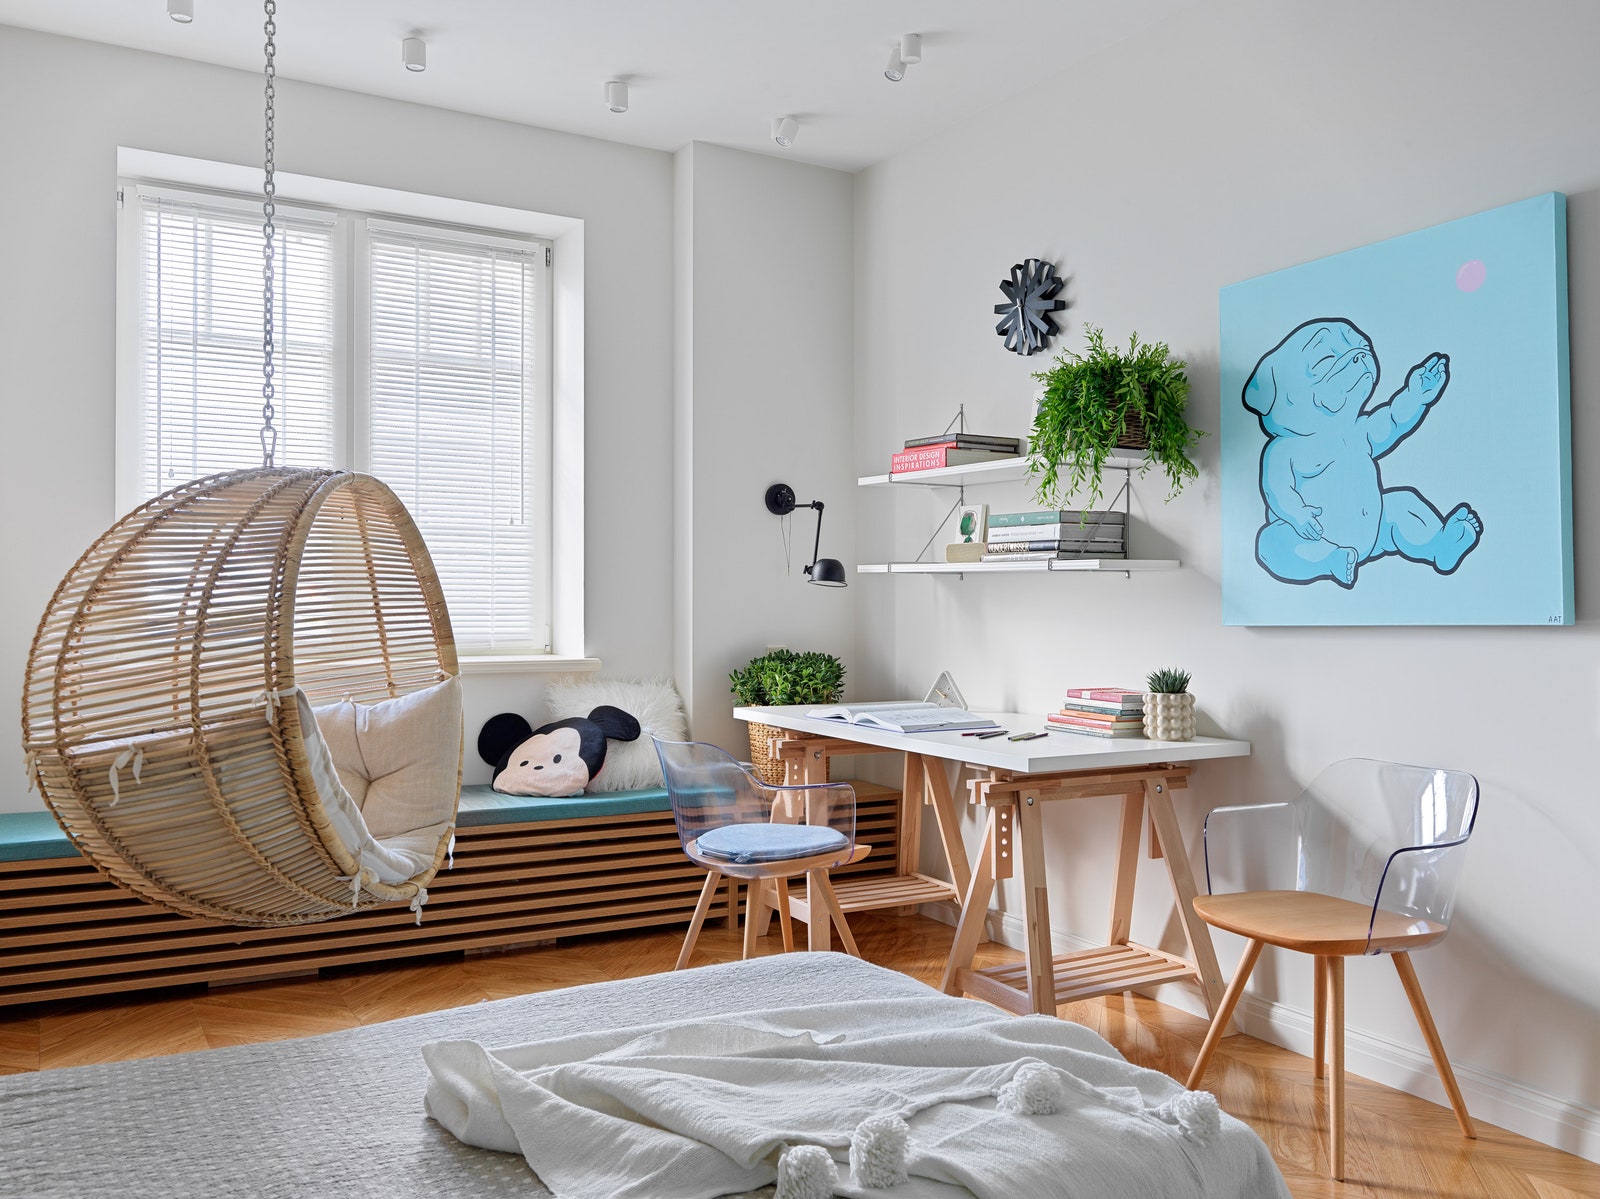 Детская спальня. Плетеное кресло La Redoute письменный стол и полки IKEA стулья La Forma на стене картина Little Bubble...